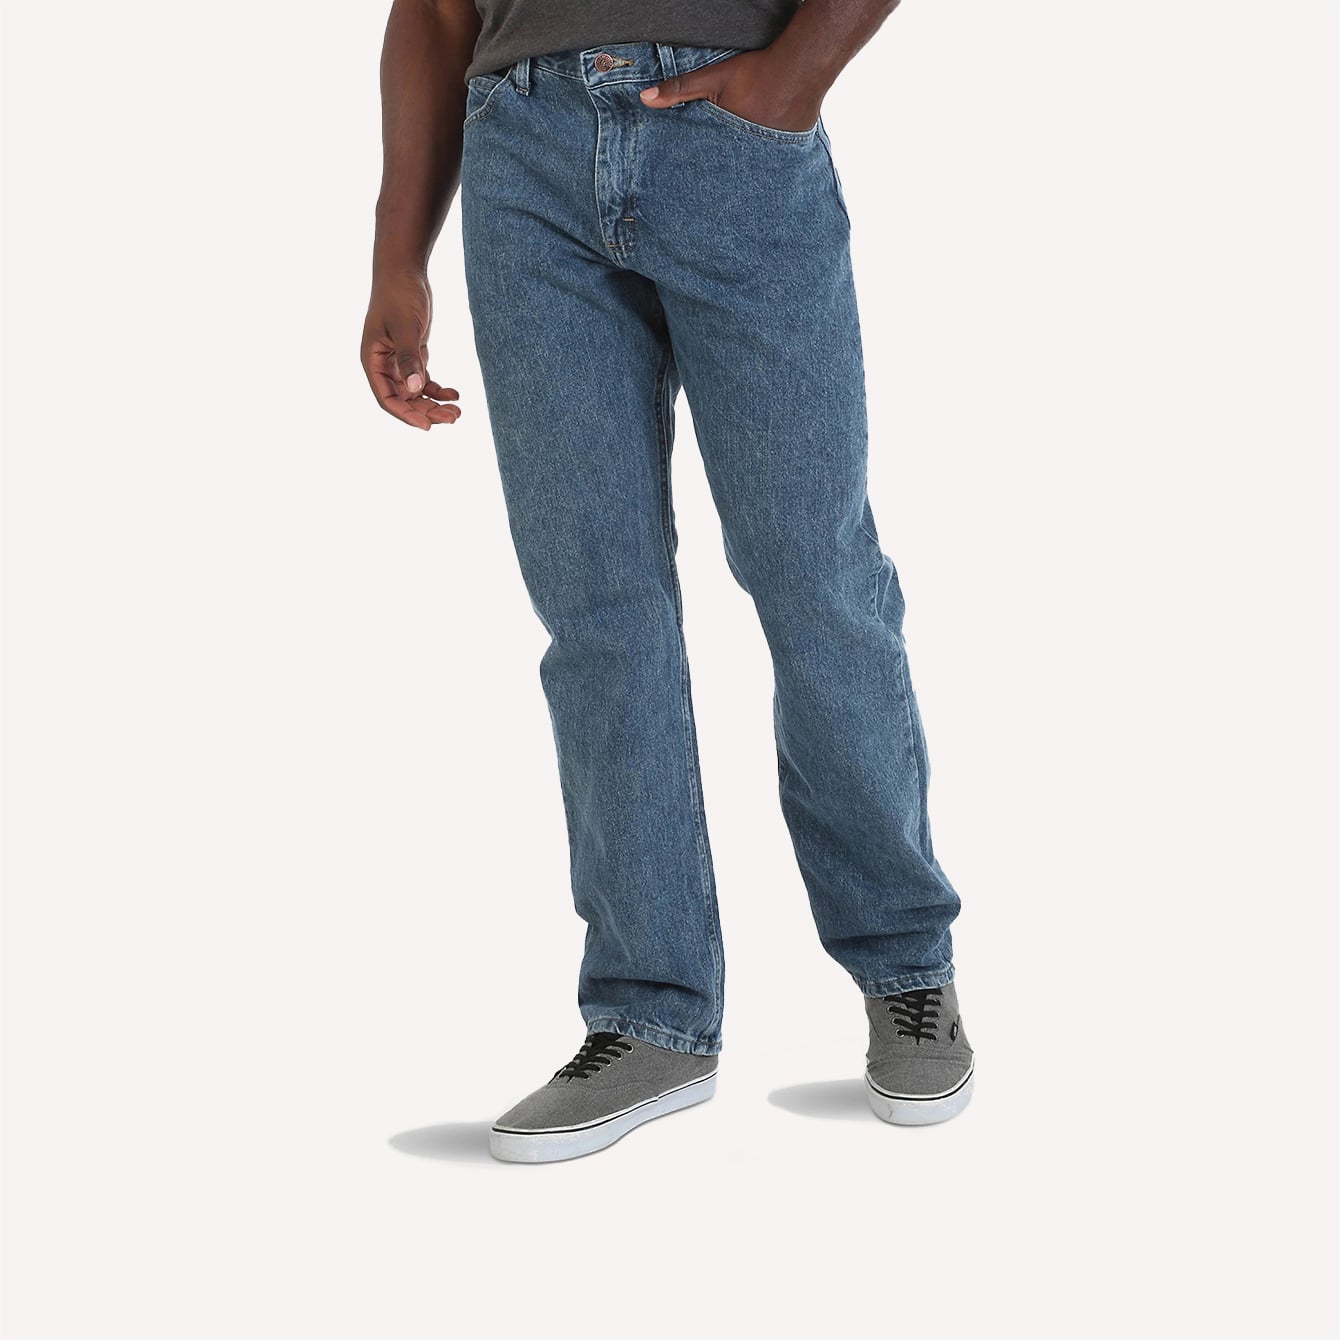 36 42 44 46 Plus Size Men's Fit Straight Jeans 2022 Autumn Brand